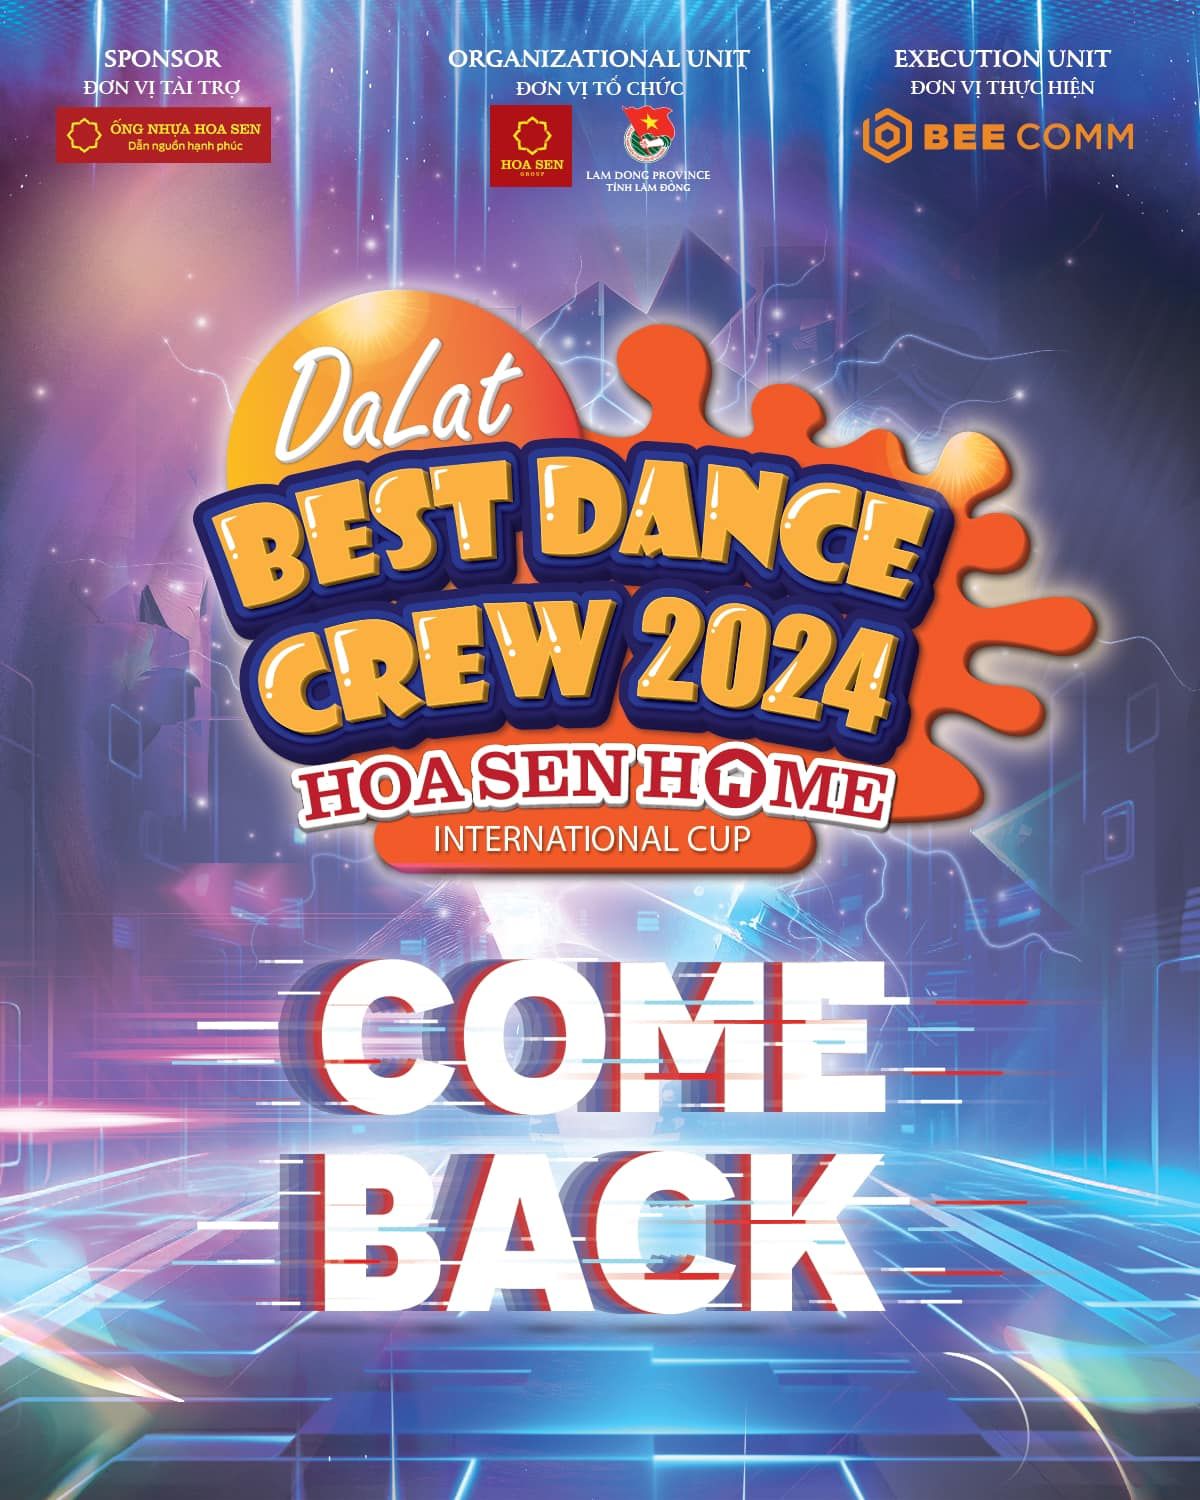 Dalat Best Dance Crew 2024 - Hoa Sen Home International Cup quay trở lại với chủ đề 'Khẳng định chất tôi' - 1